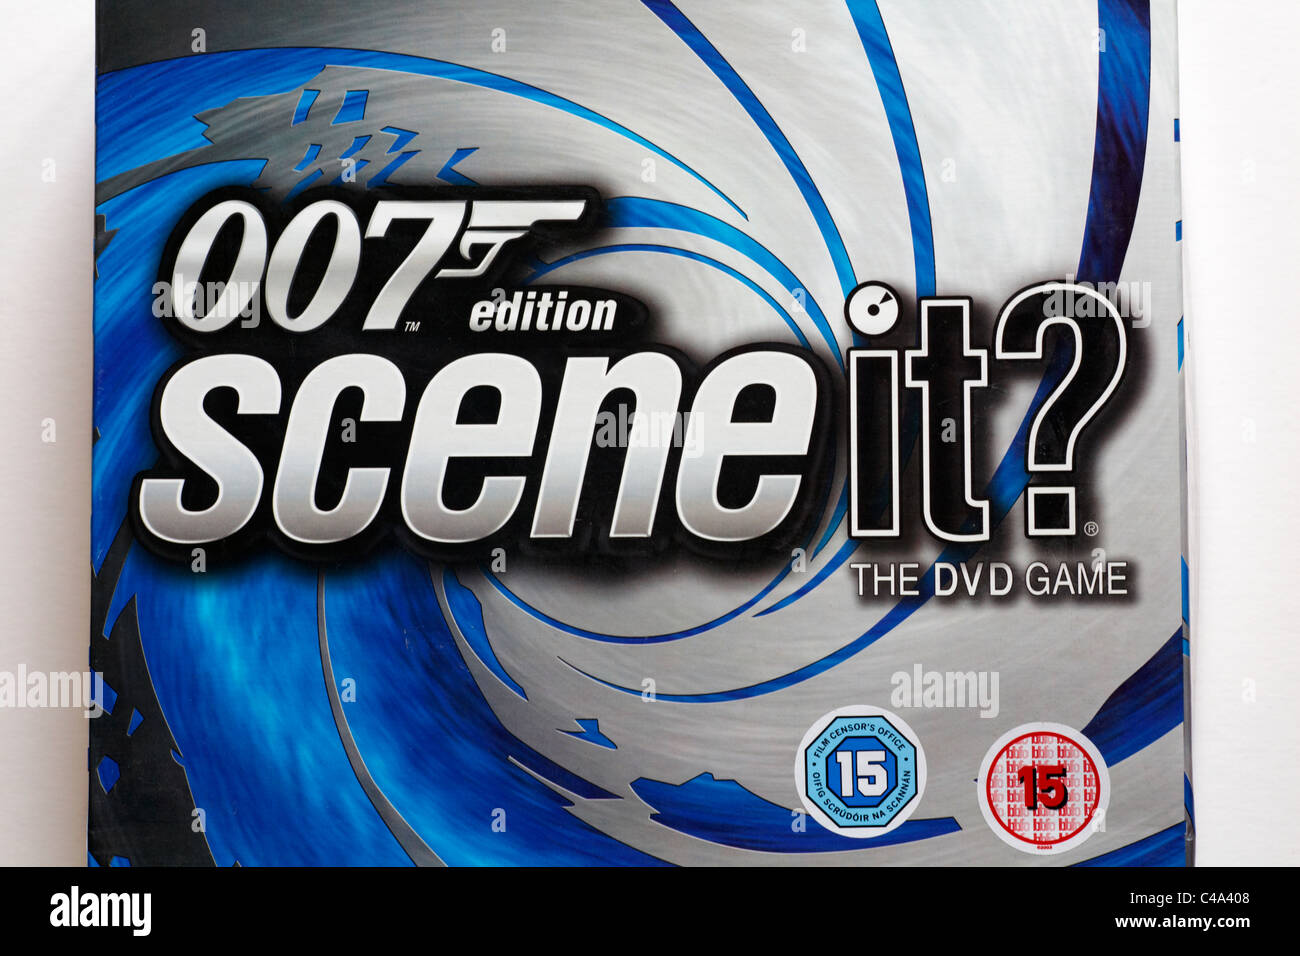 Gros plan sur James Bond Scene IT ? Jeu DVD édition 007 scène IT? jeu de société sur fond blanc Banque D'Images